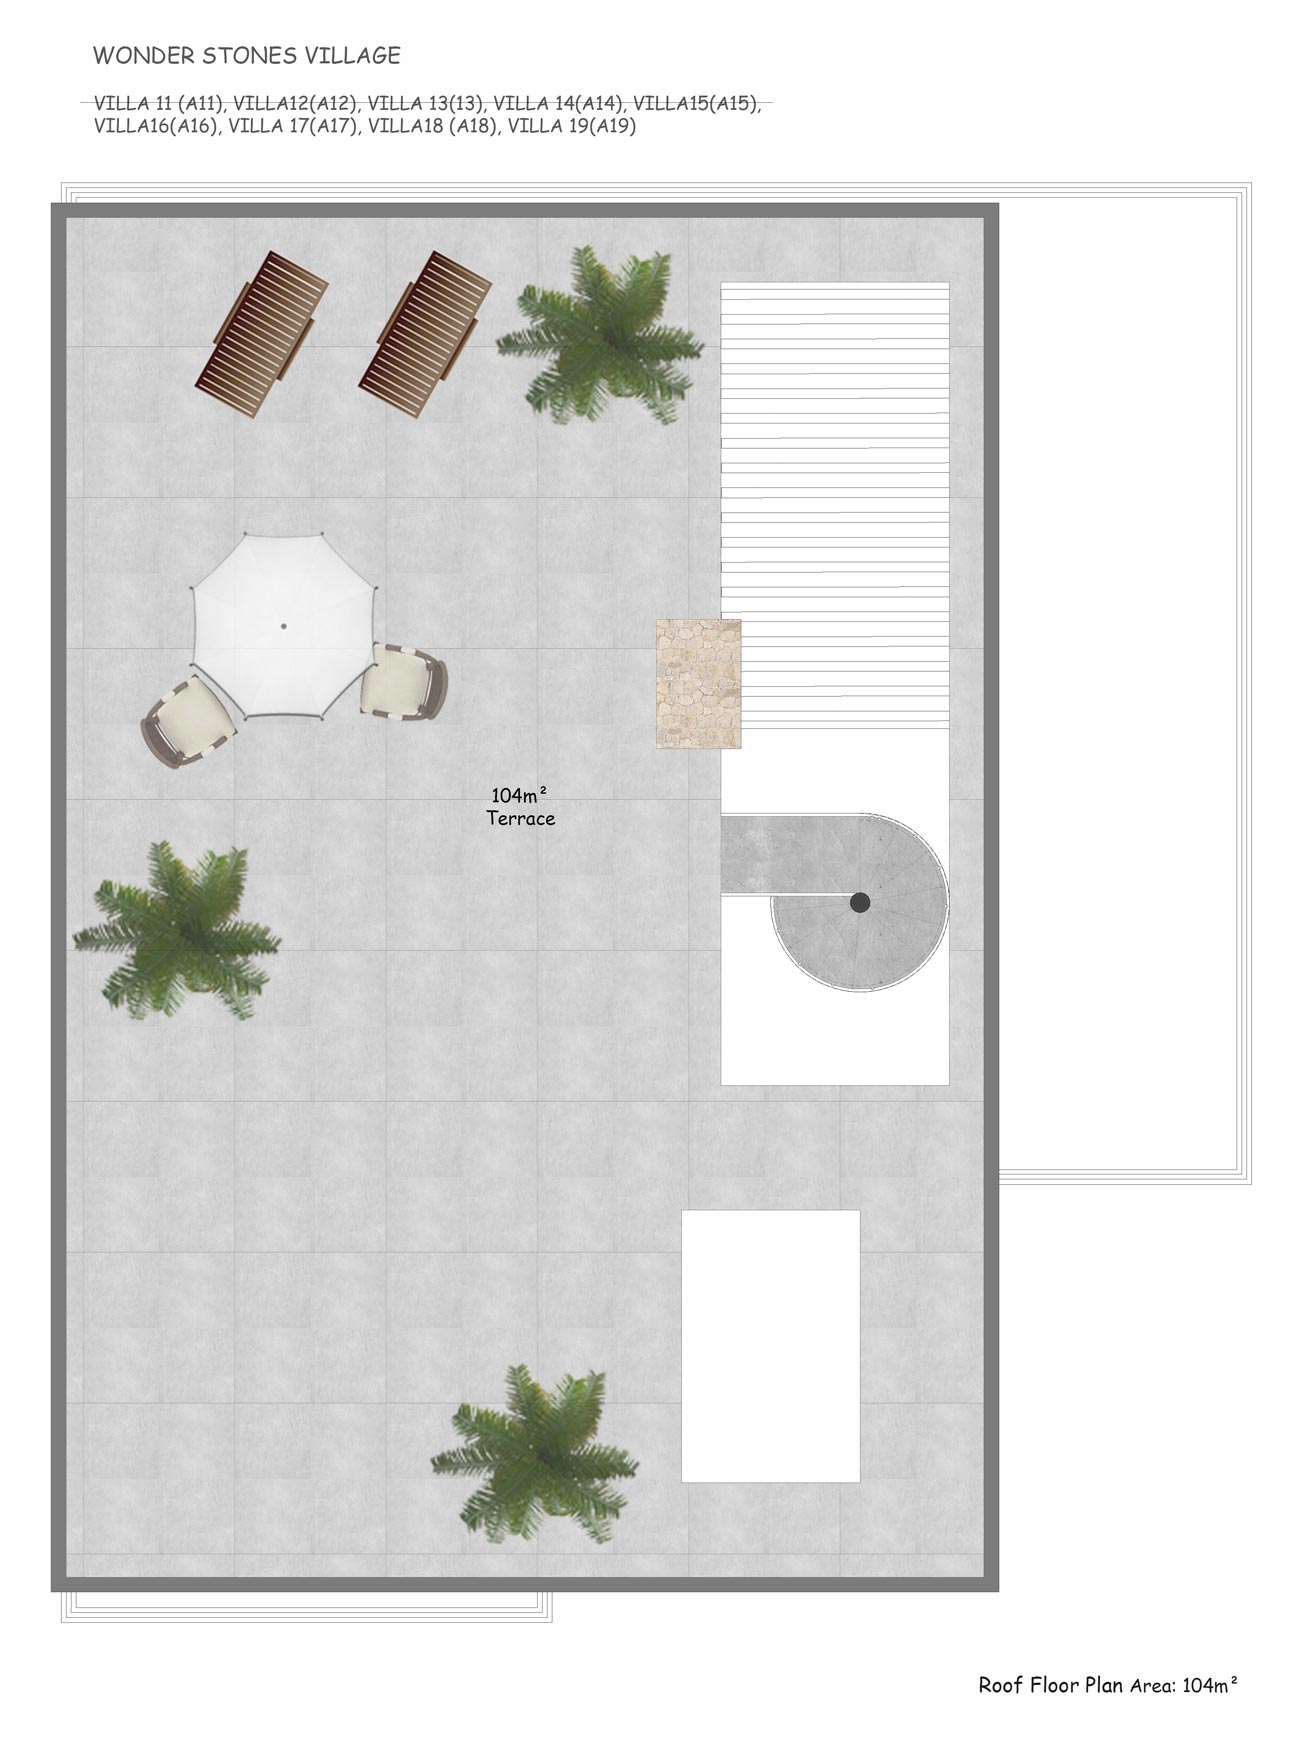 Floor Plan - Roof terraces 